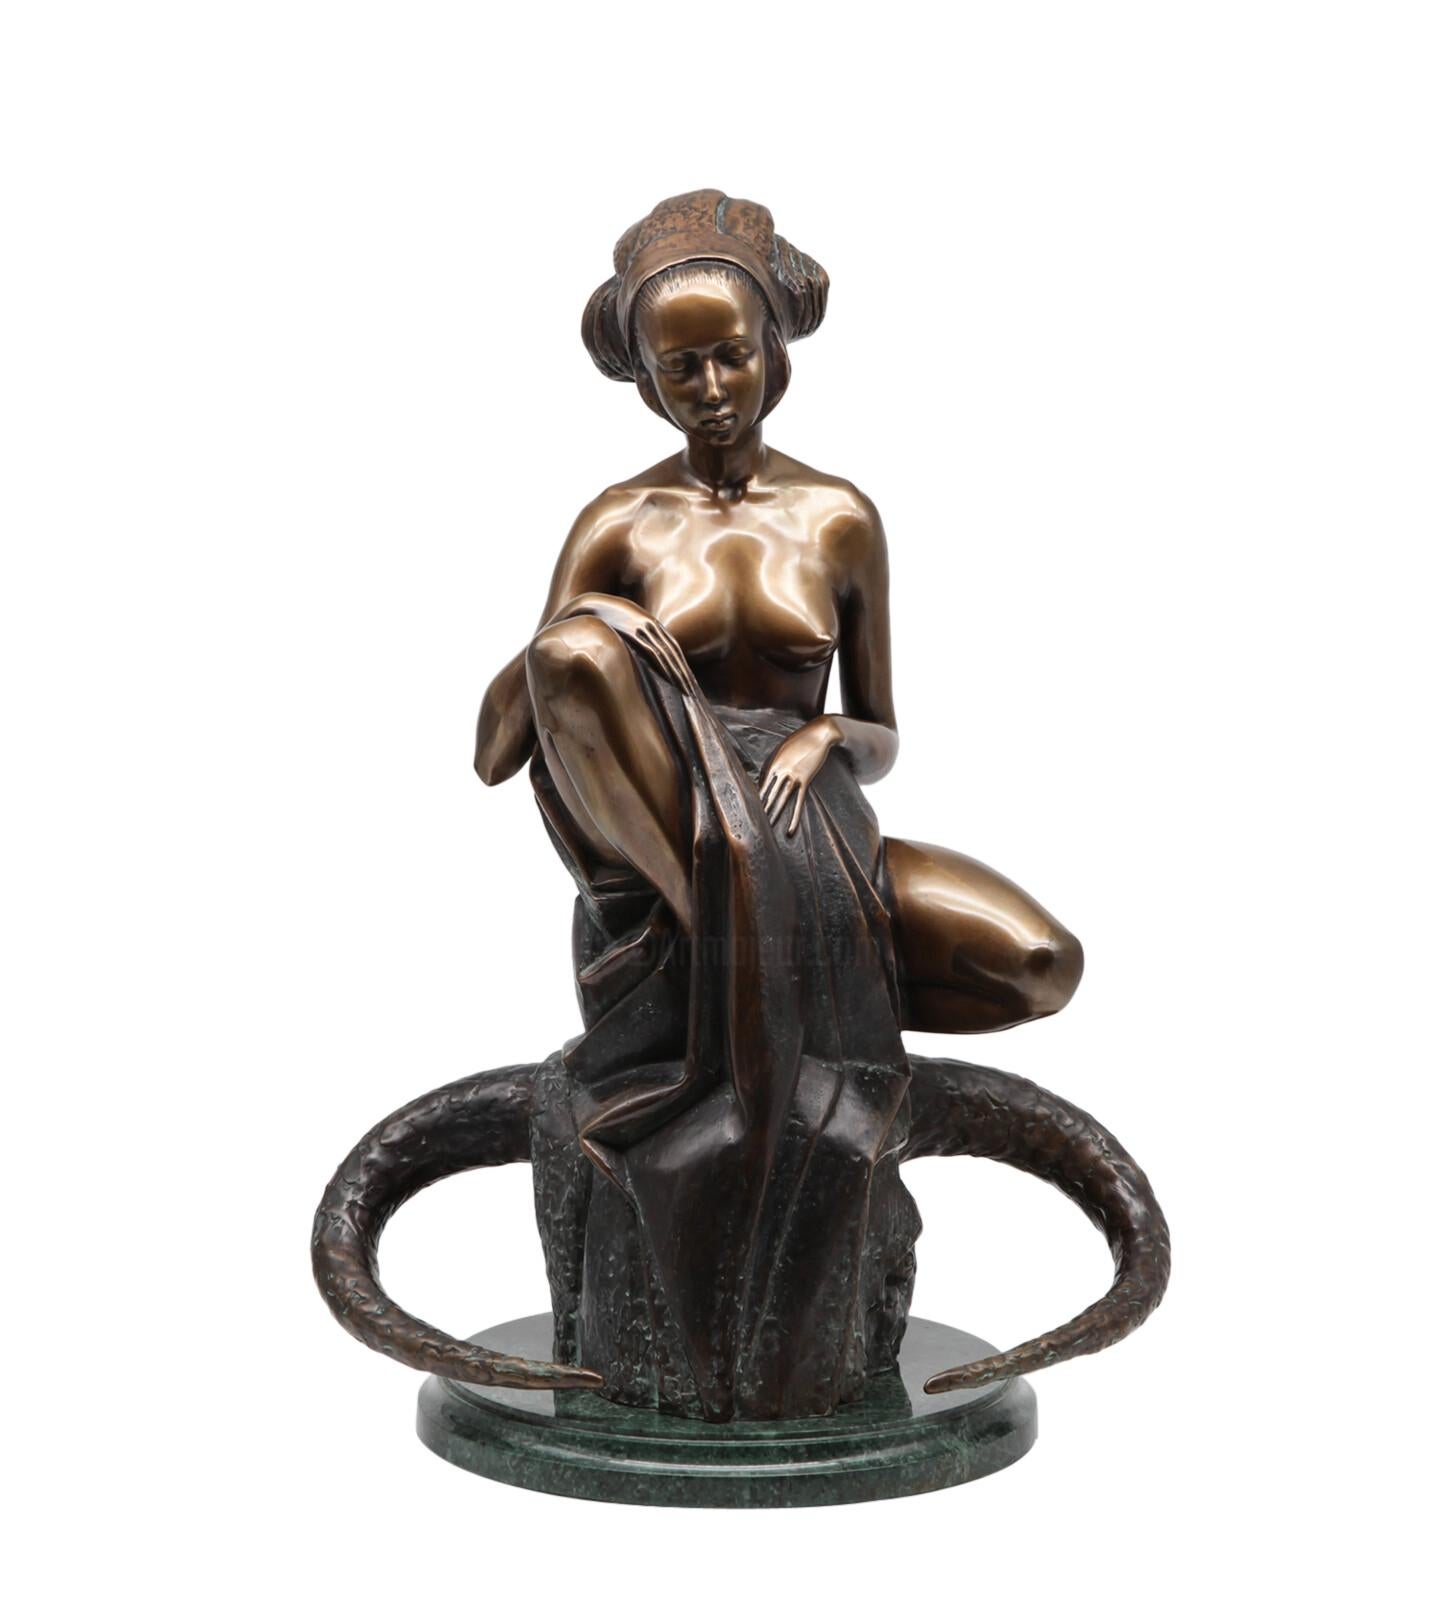 Volodymyr MYKYTENKO Figurative Sculpture - Abduction of Europe, Bronze Sculpture by Volodymyr Mykytenko, 1997